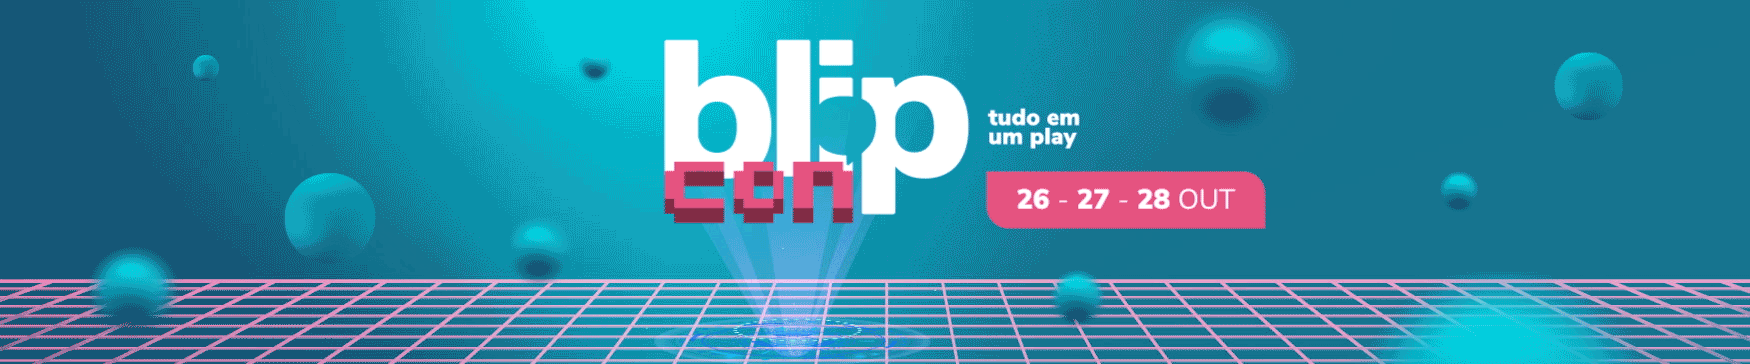 blipcon gif - BlipCon: uma experiência digital que veio para ficar! BlipCon